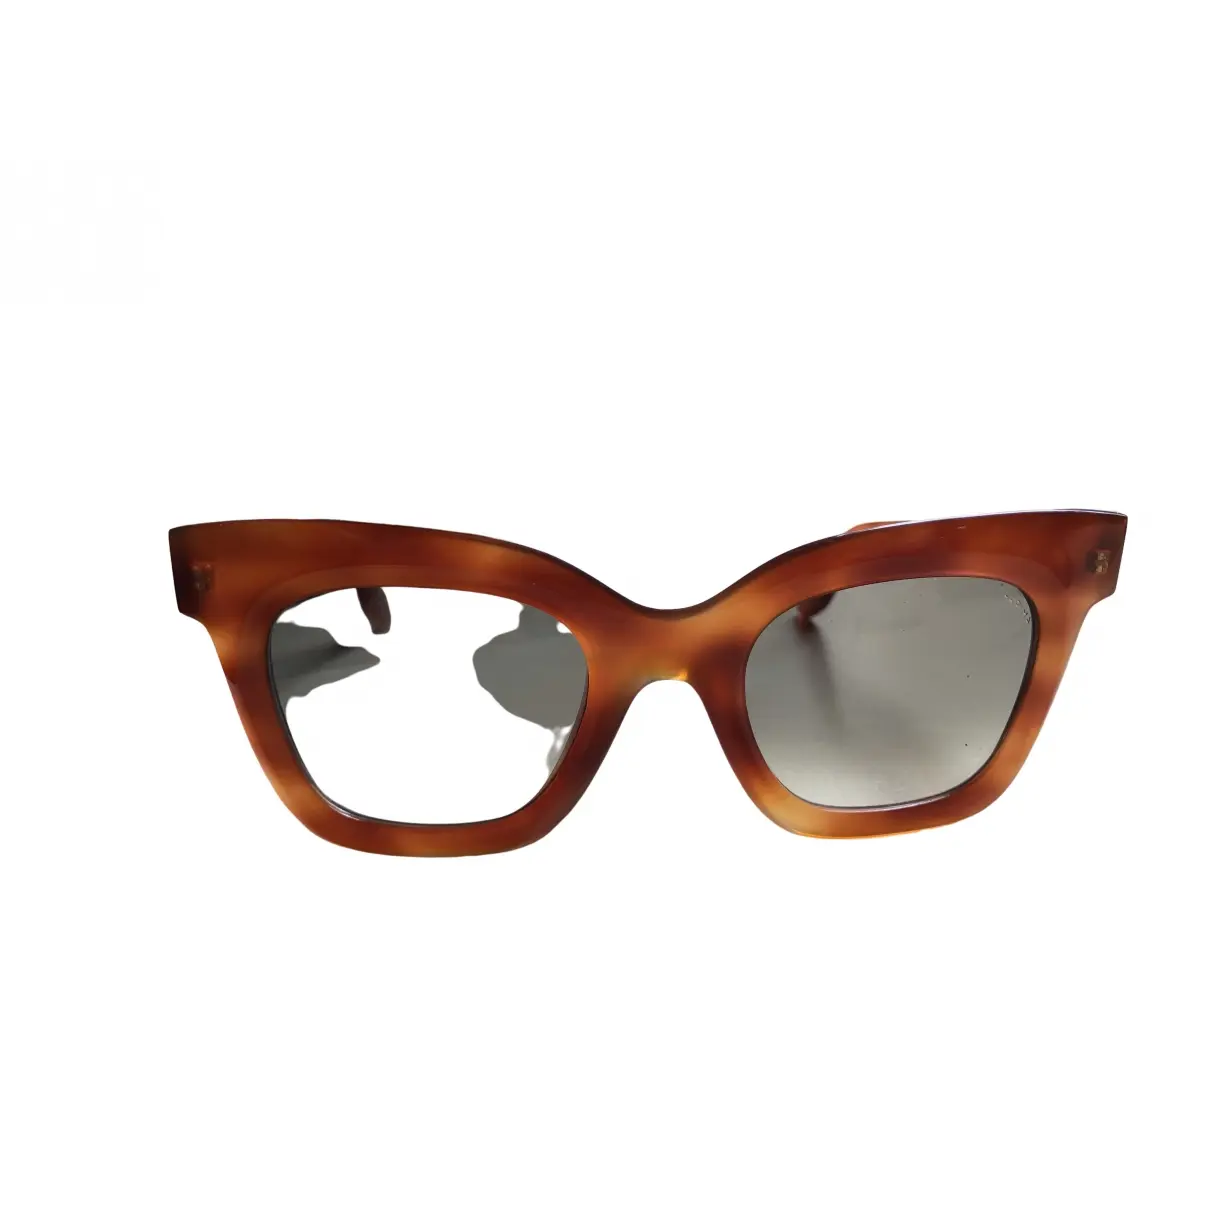 Buy Lapima Oversized sunglasses online